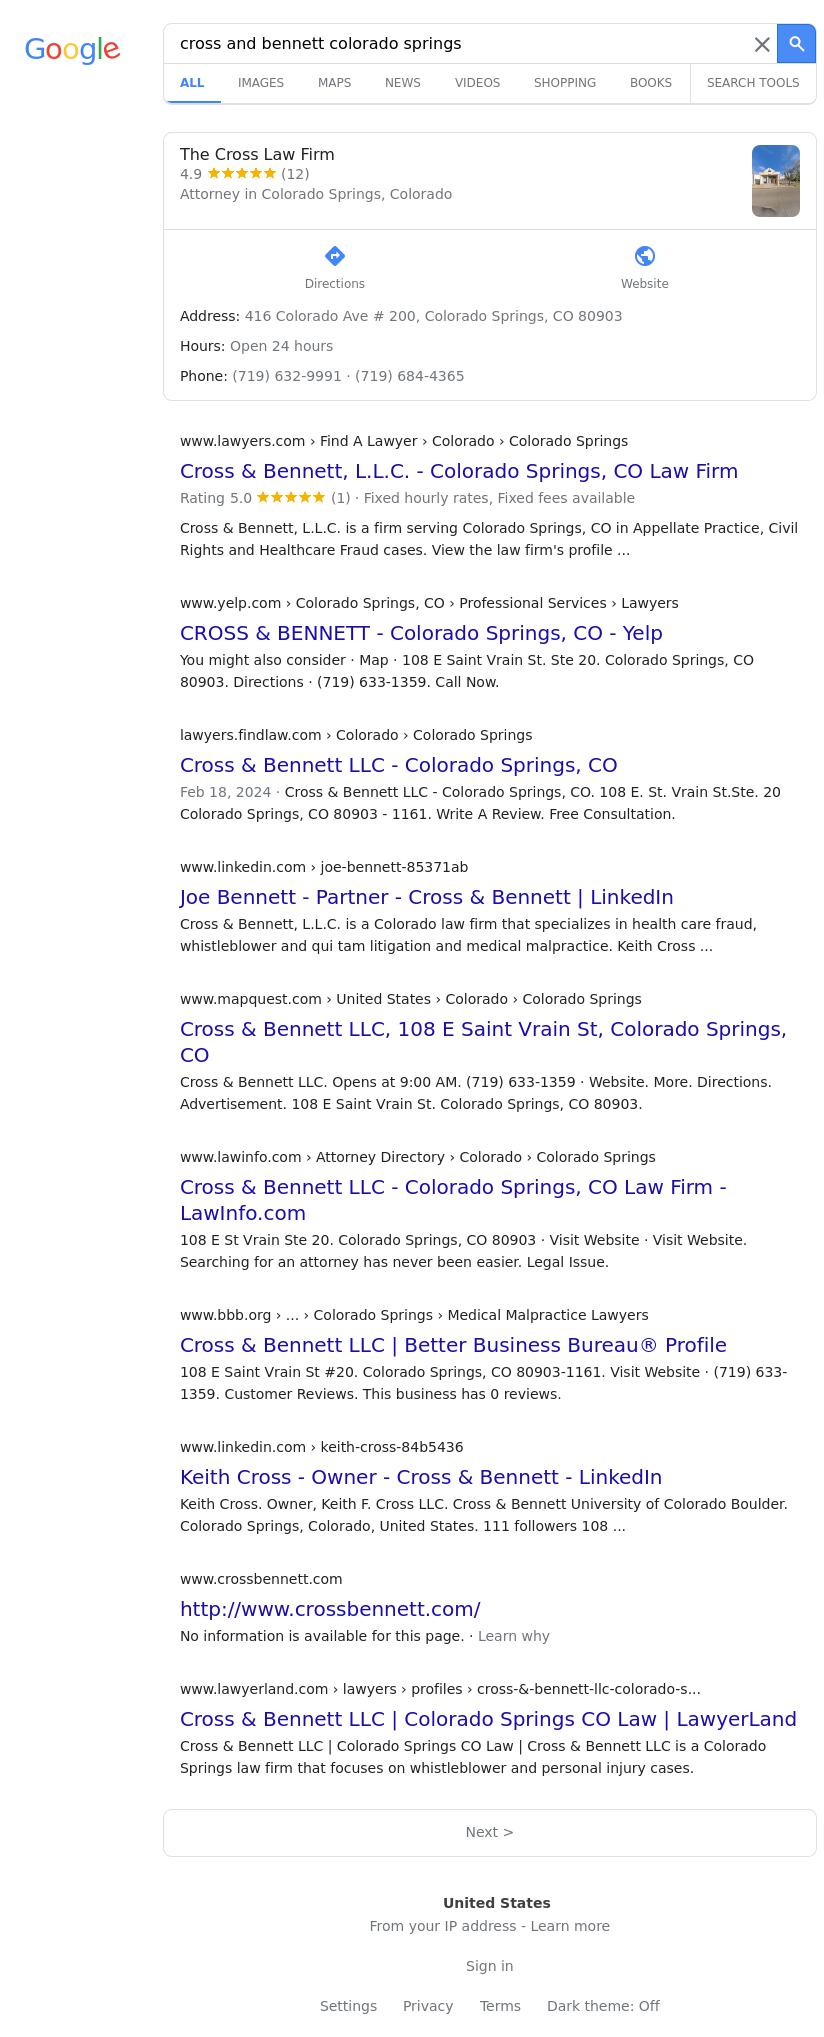 Cross & Bennett LLC - Colorado Springs CO Lawyers